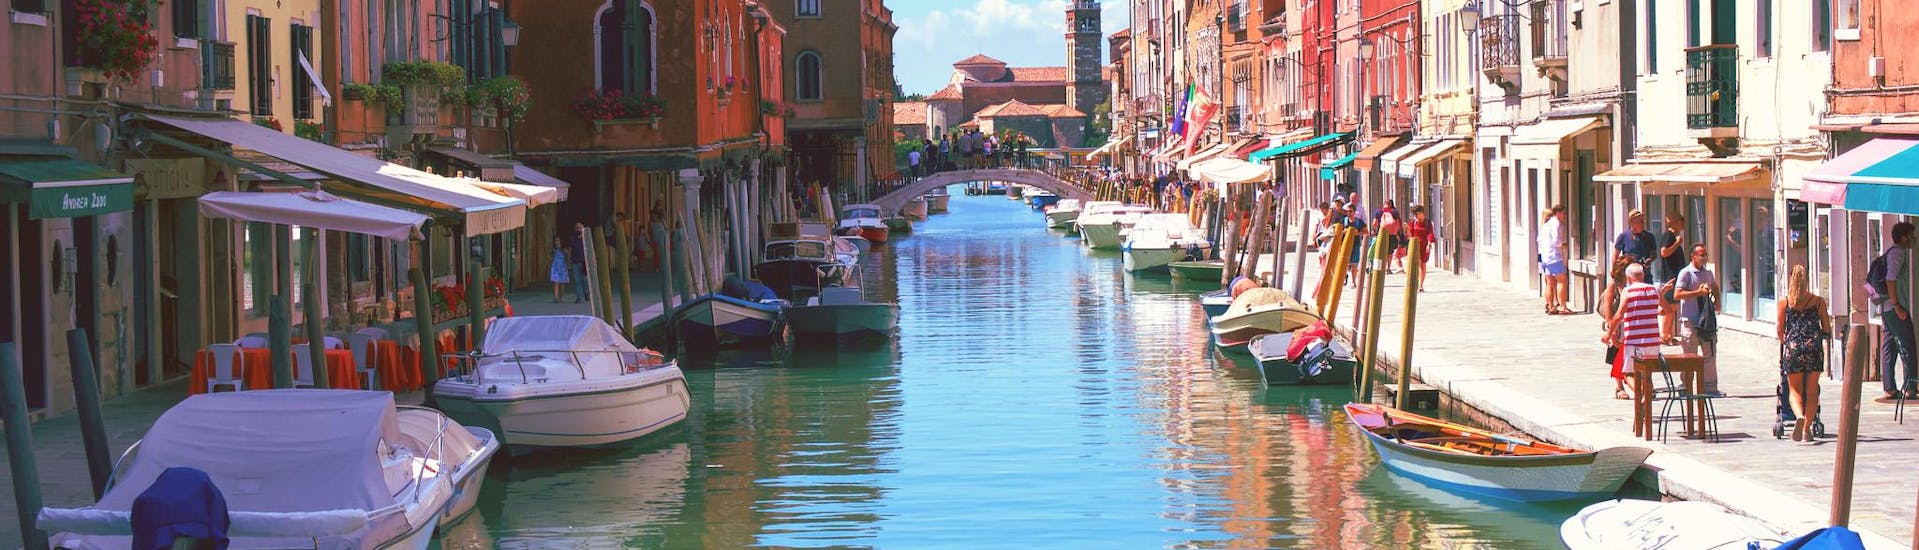 Boten in de grachten van Murano tijdens een boottocht naar Murano.